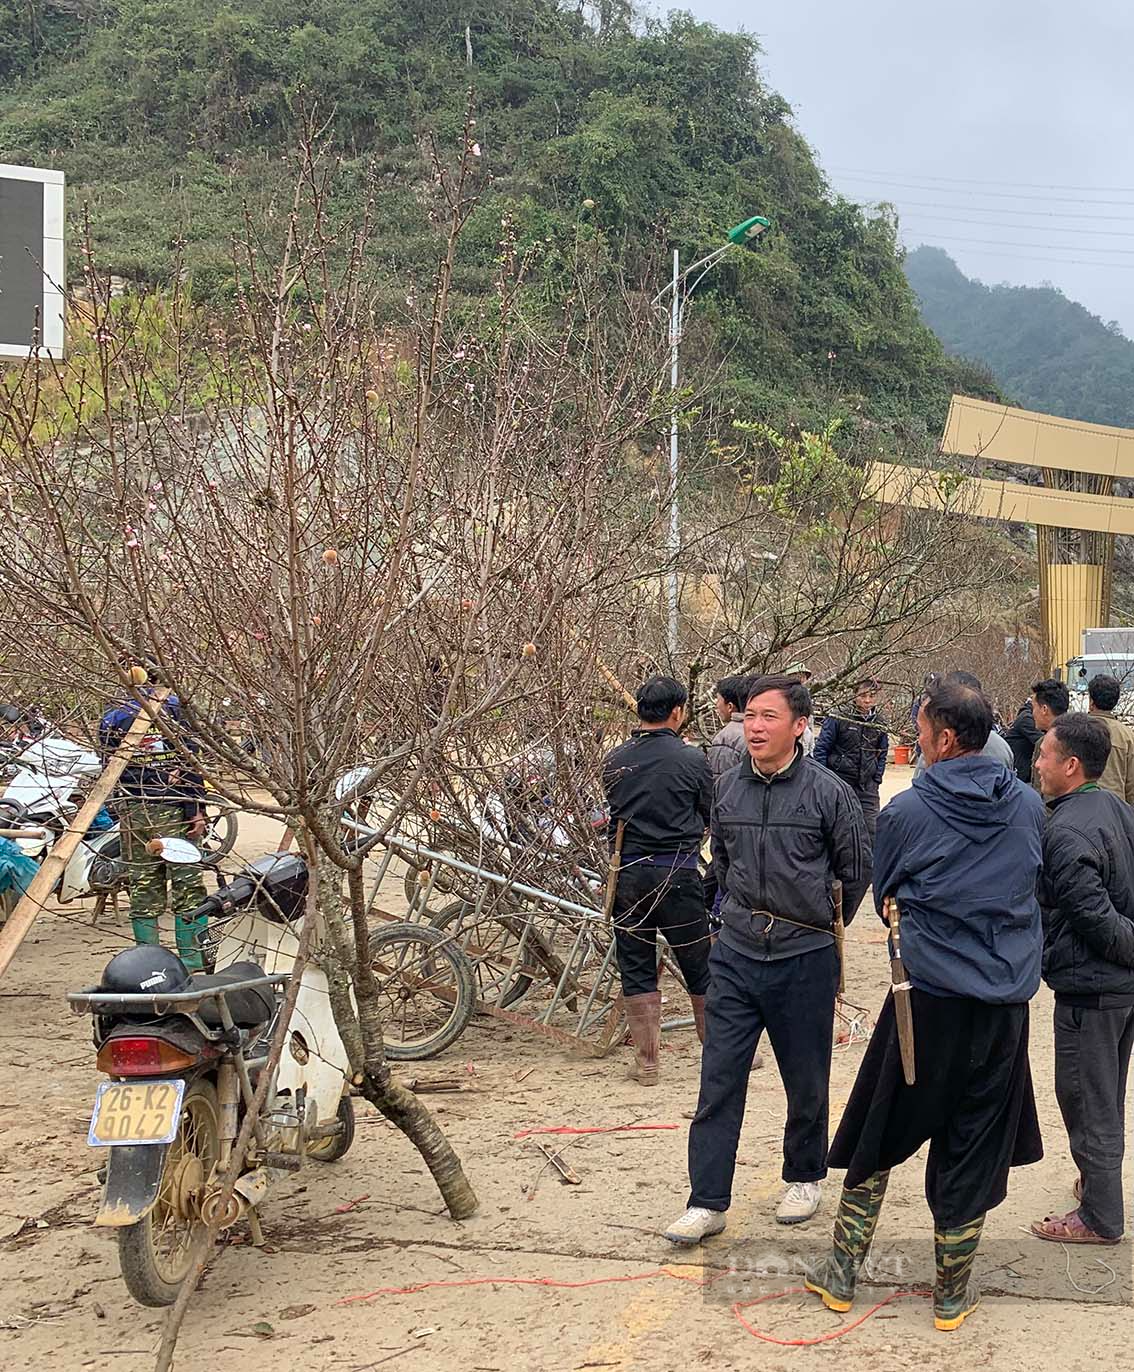 Du khách choáng với giá cây đào lên tới 10 triệu đồng ở Vân Hồ, tỉnh Sơn La - Ảnh 6.